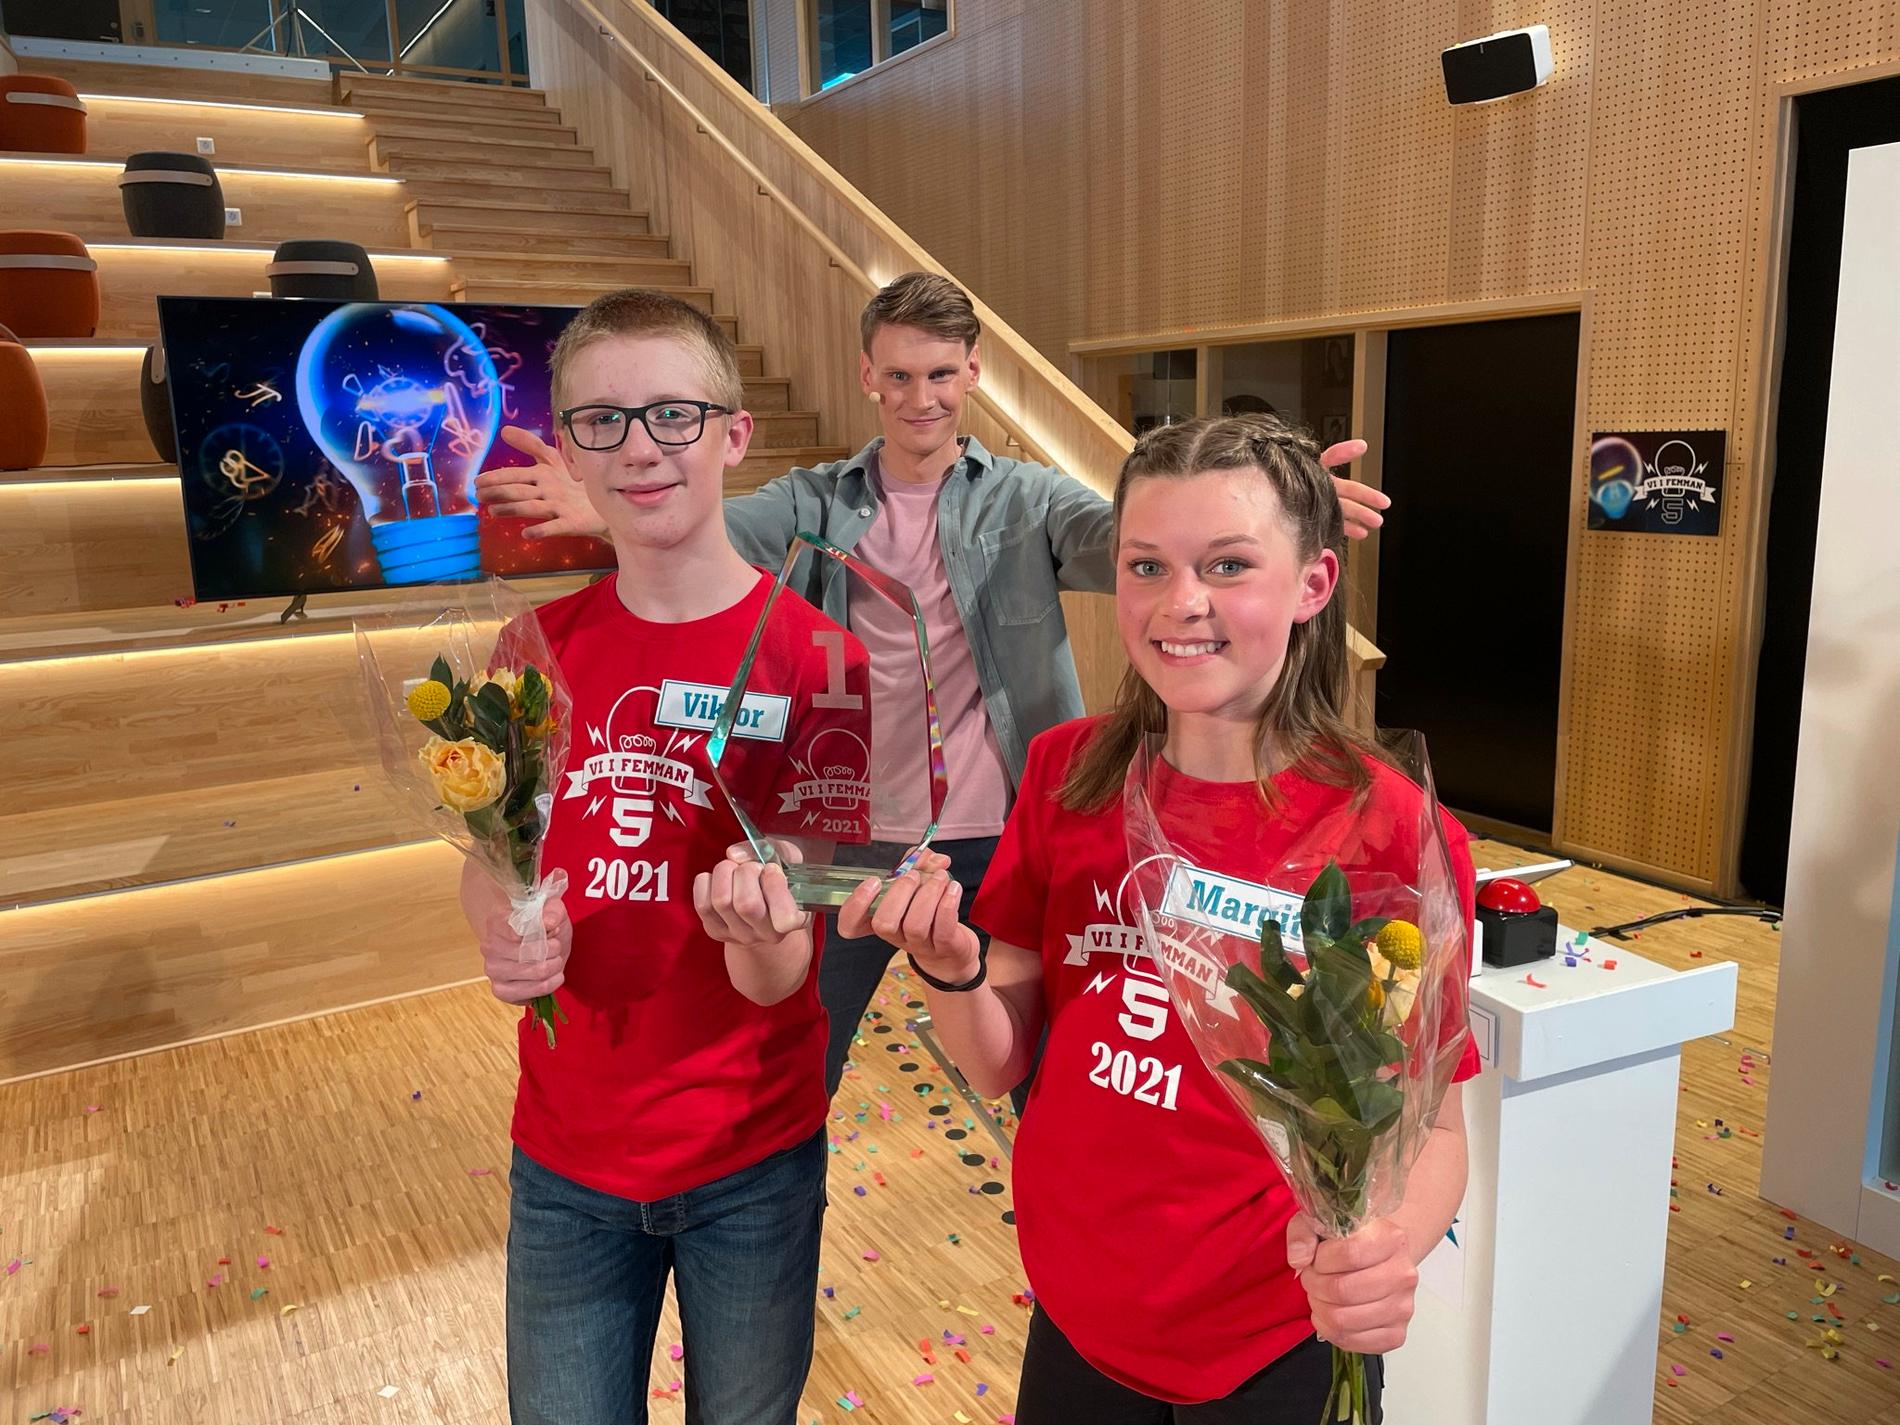 Viktor Berg och Margit Klintenberg från Lillåns skola klass 5A i Örebro blev vinnare av Vi i femman 2021. Programledare var Kristoffer Fransson